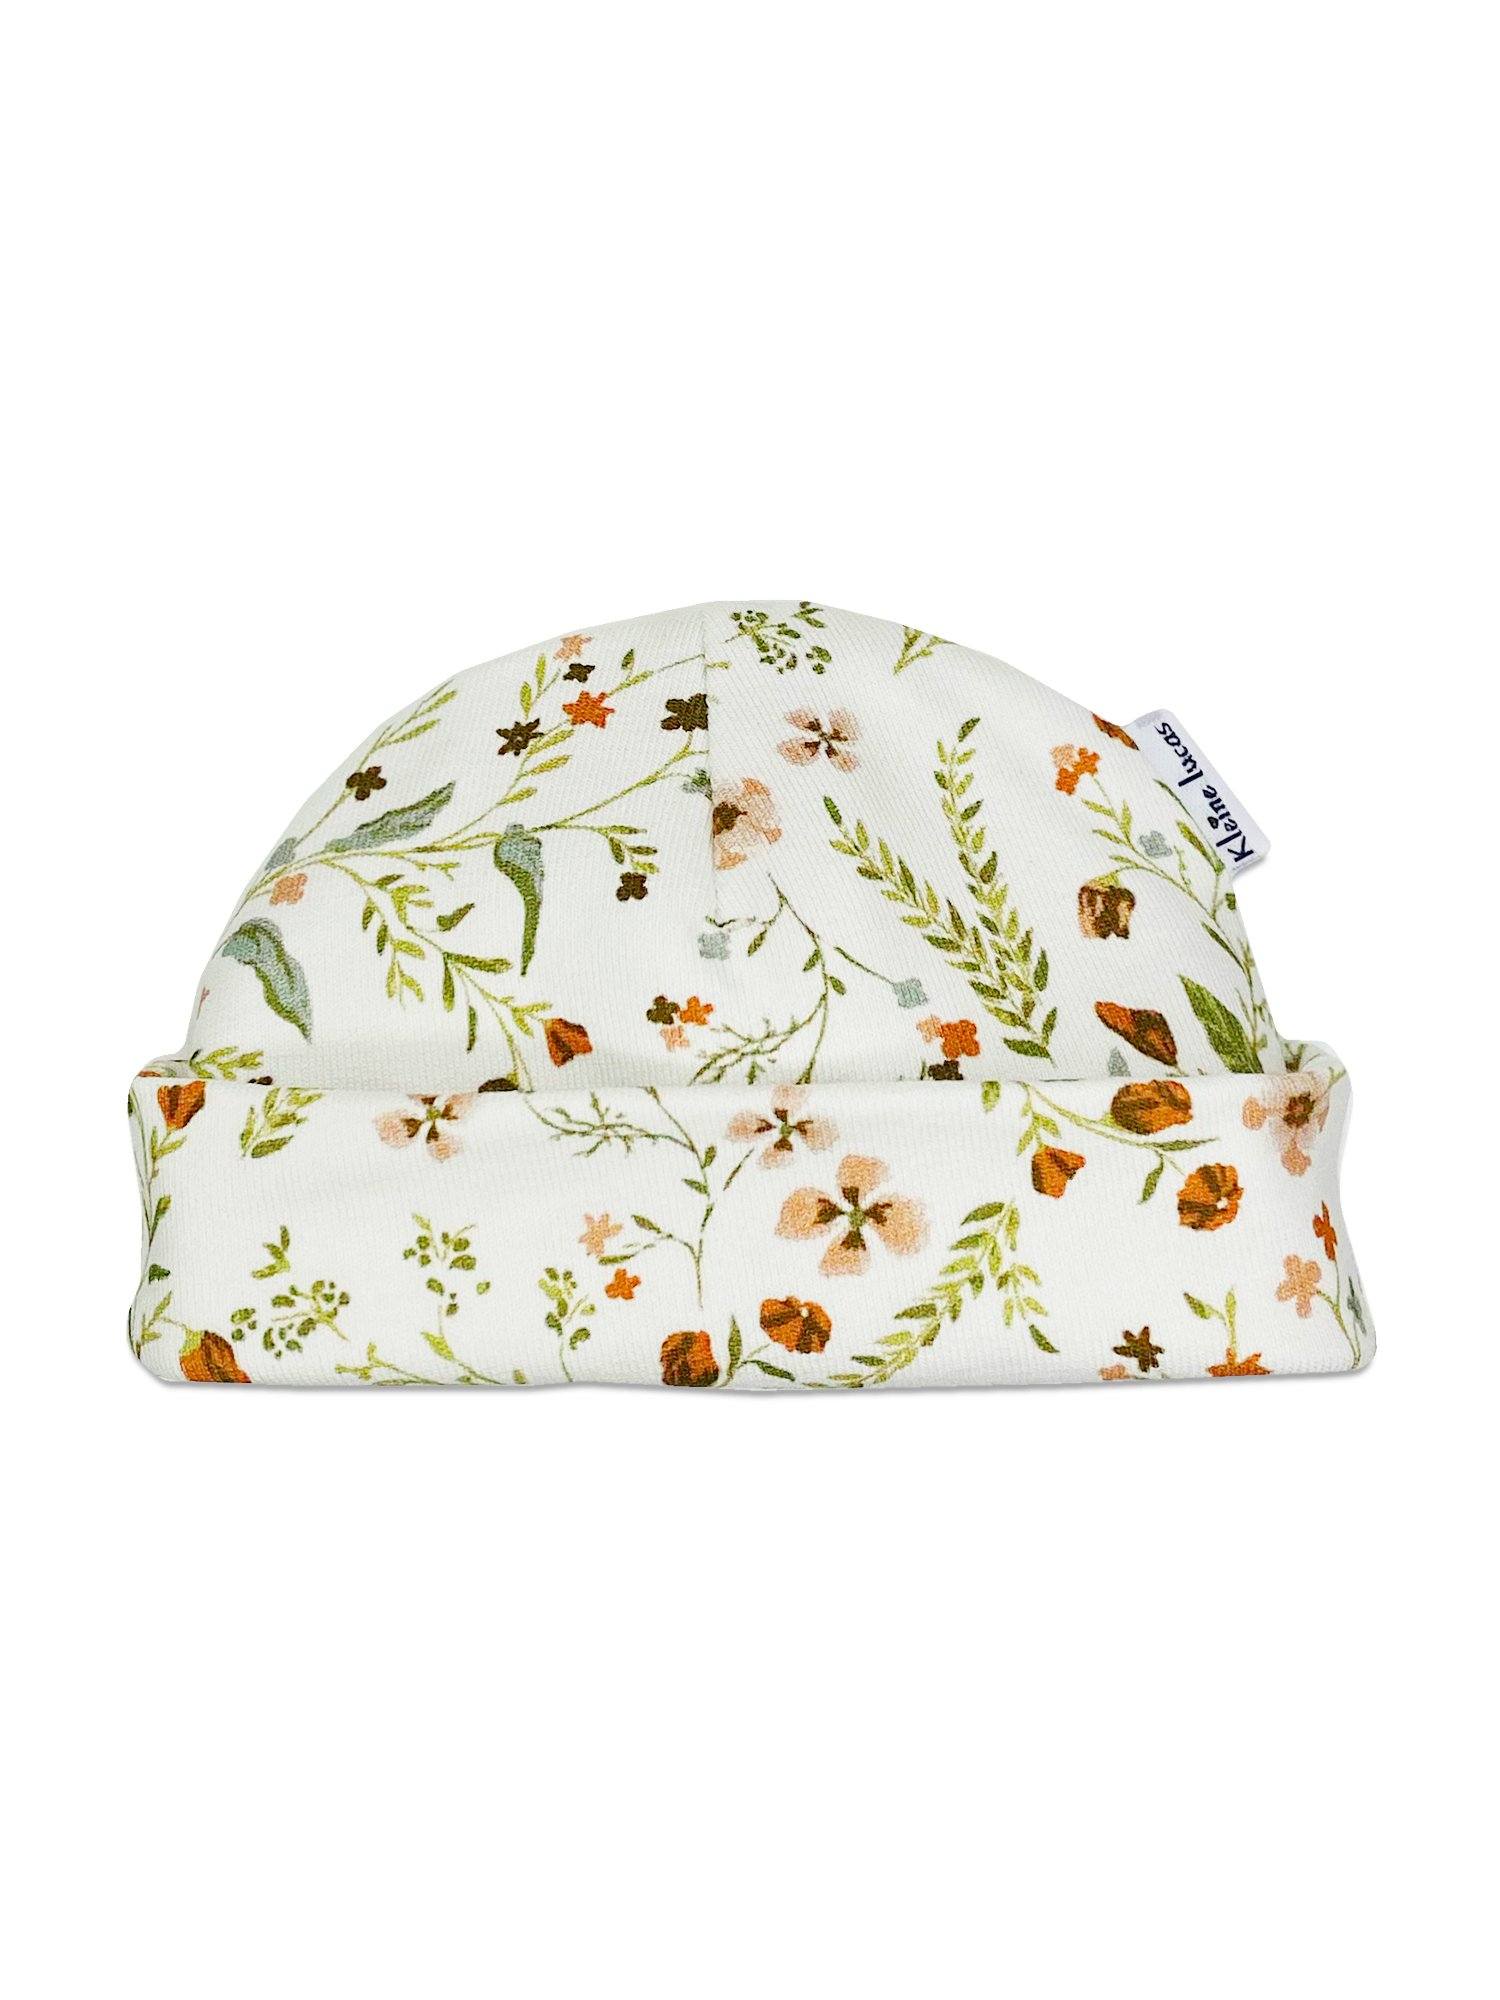 Autumnal Floral Print Premature Baby Hat - Hat - Little Lucas